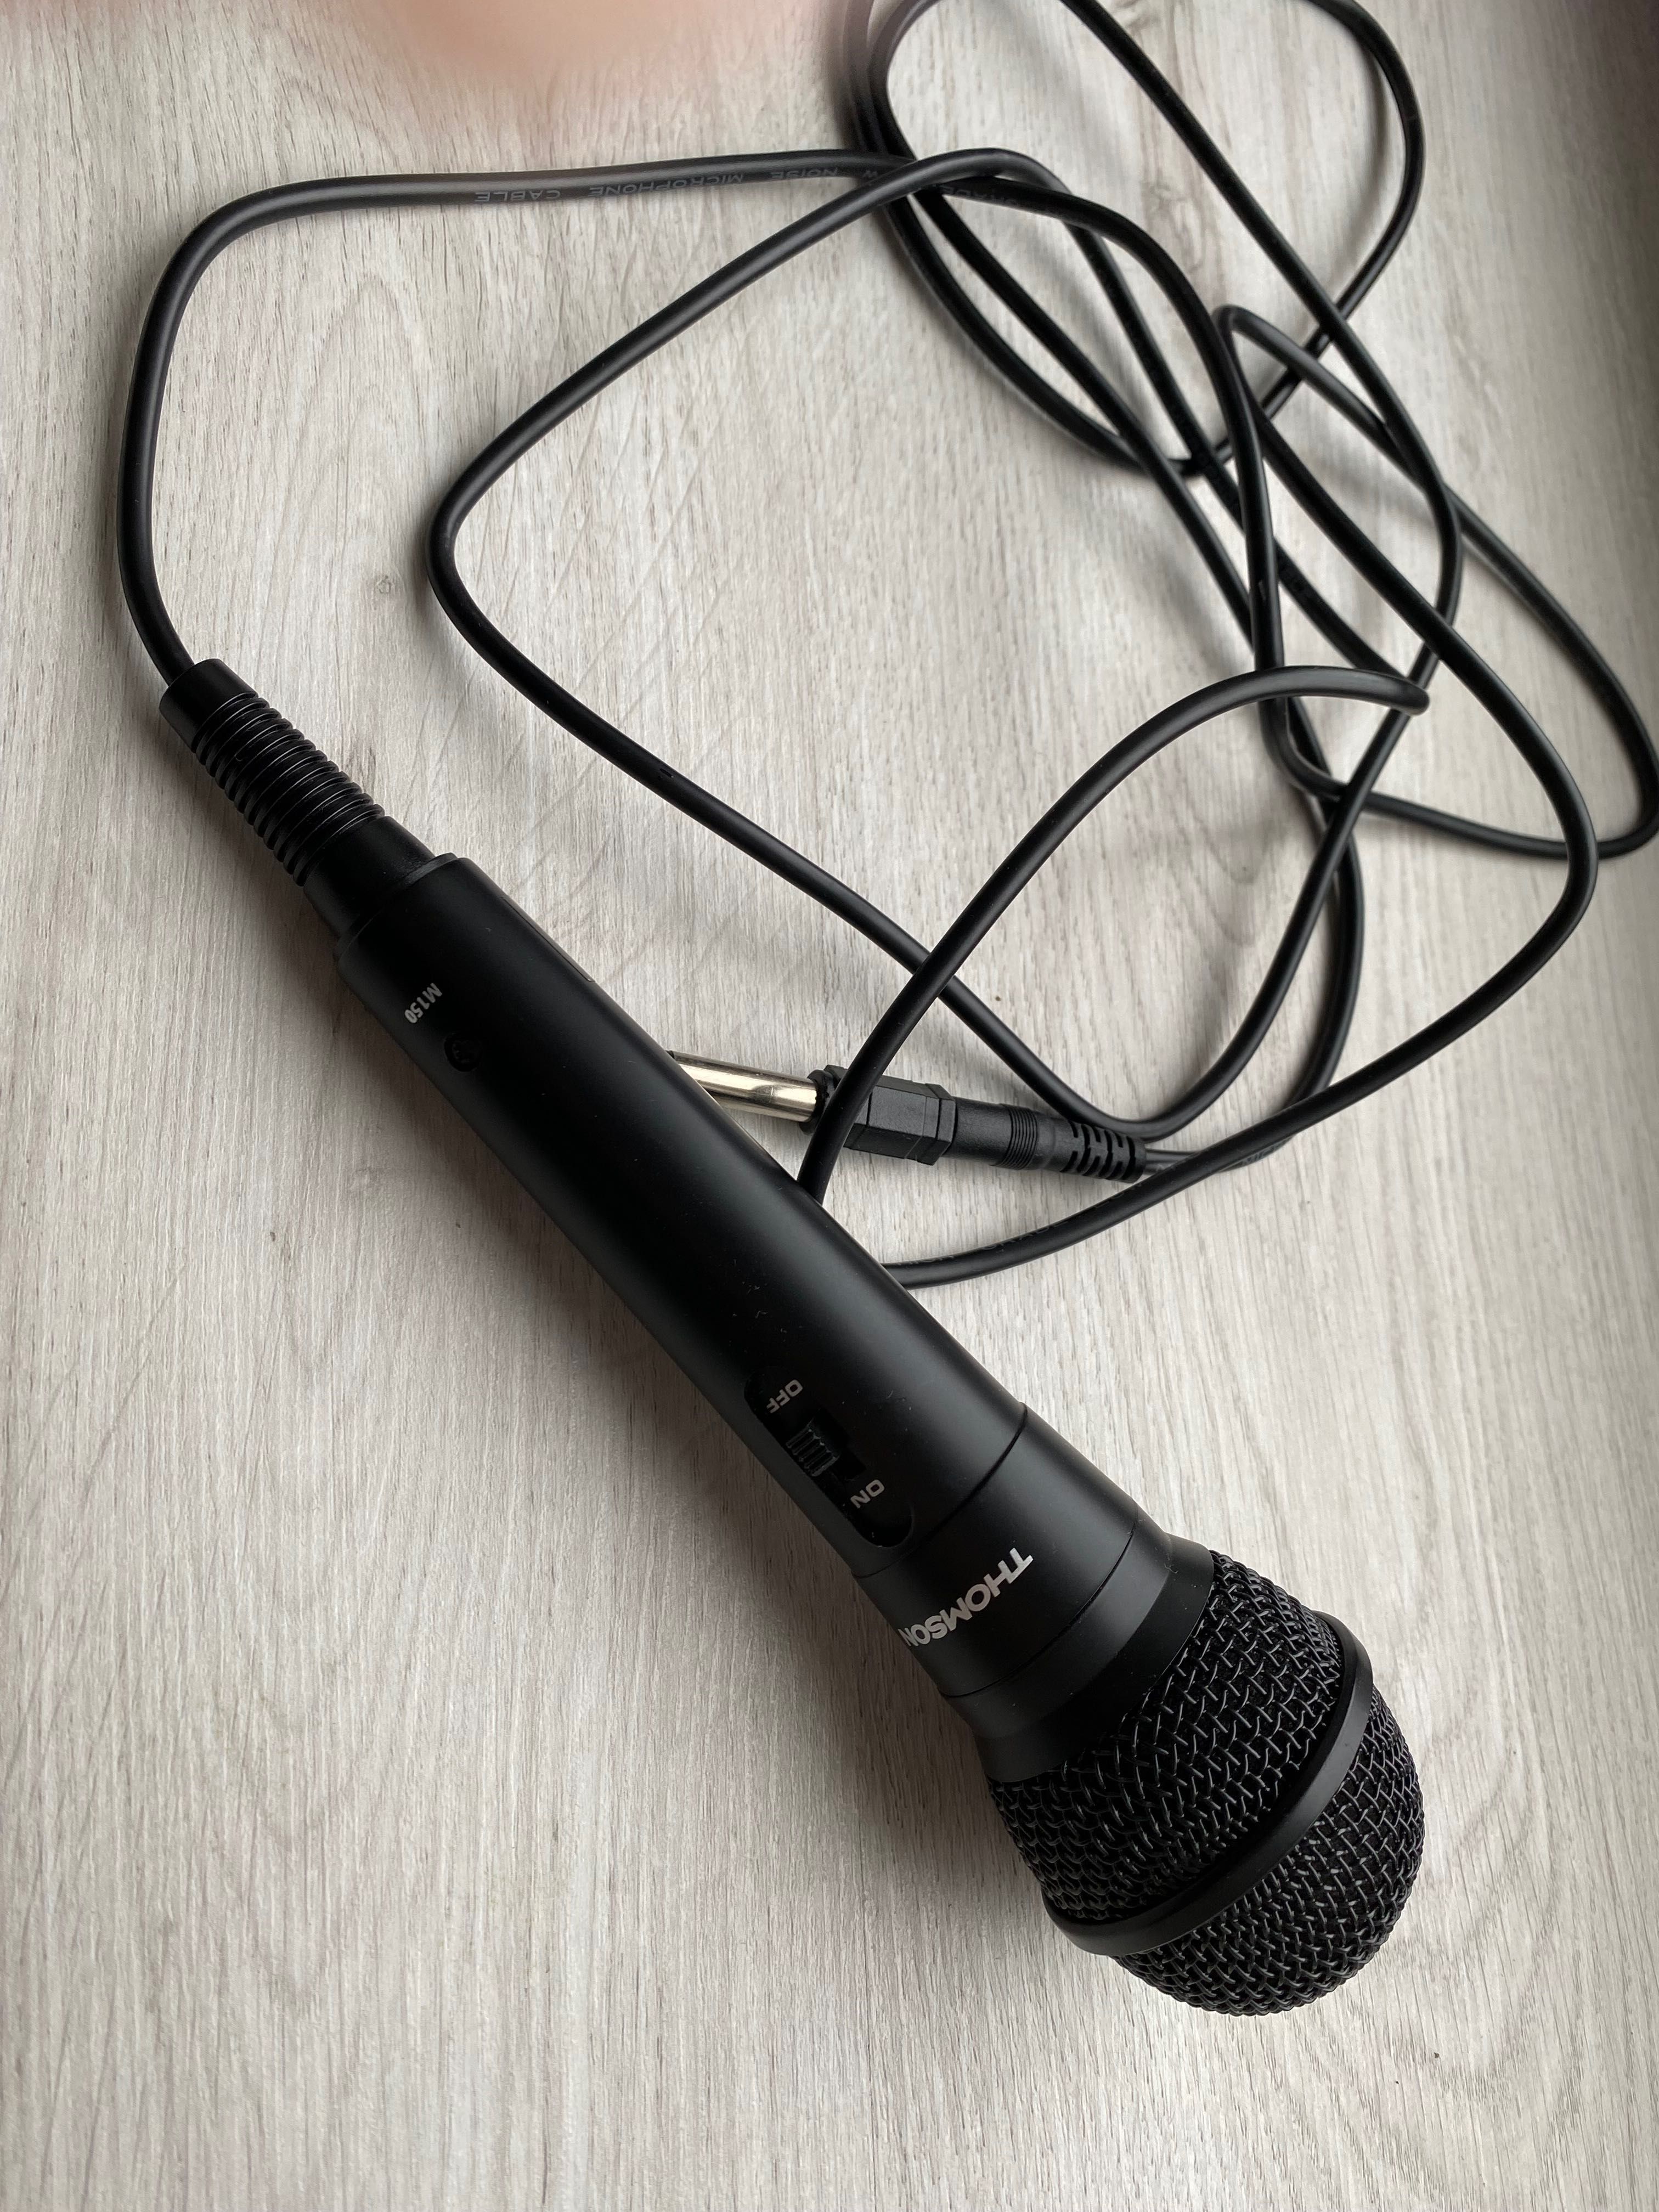 Microfon Thomson M150 Dynamic